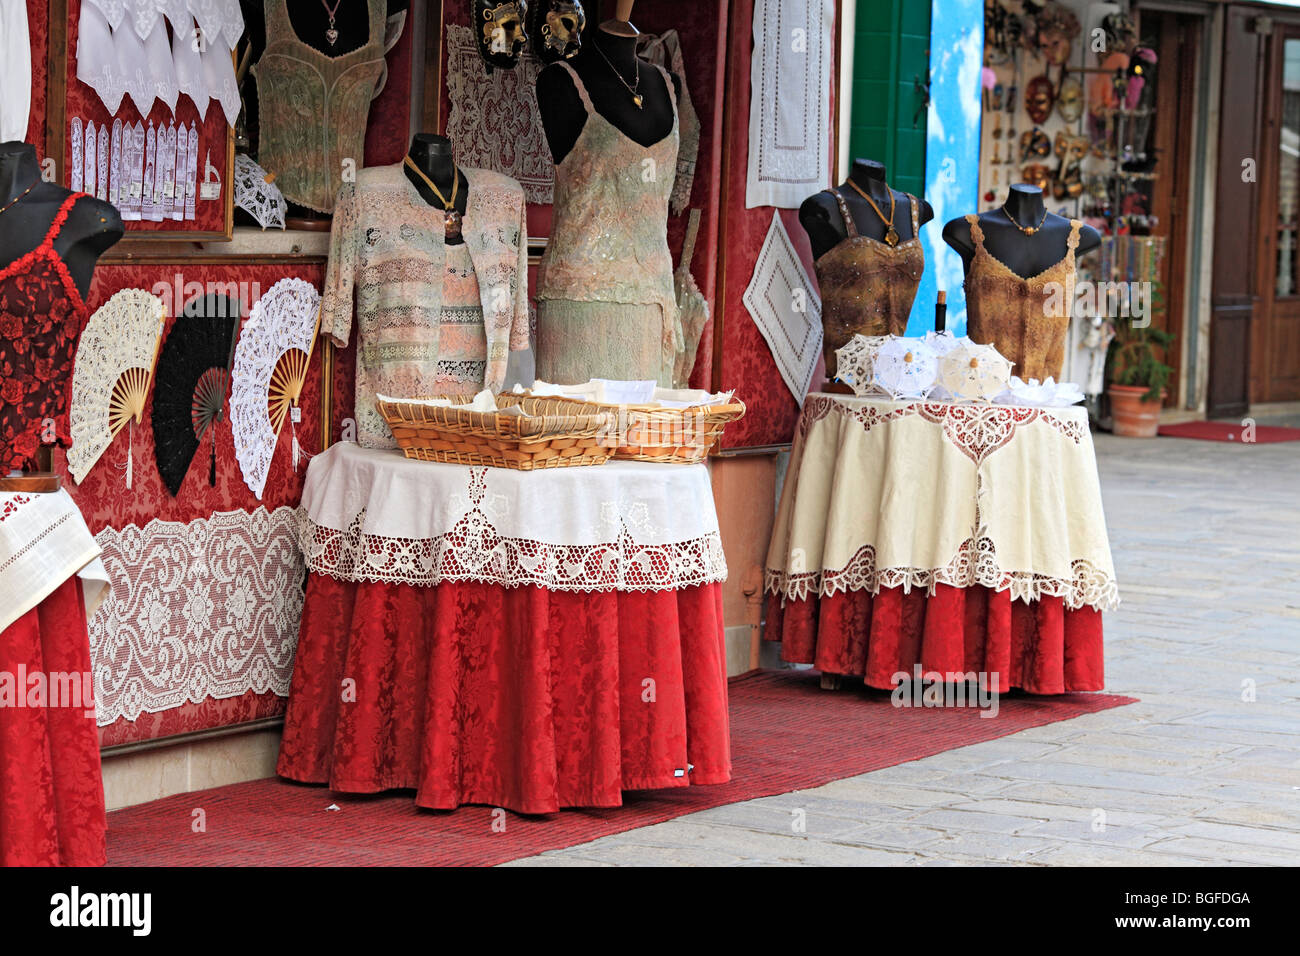 Shop with laces, Burano, Venice, Veneto, Italy Stock Photo